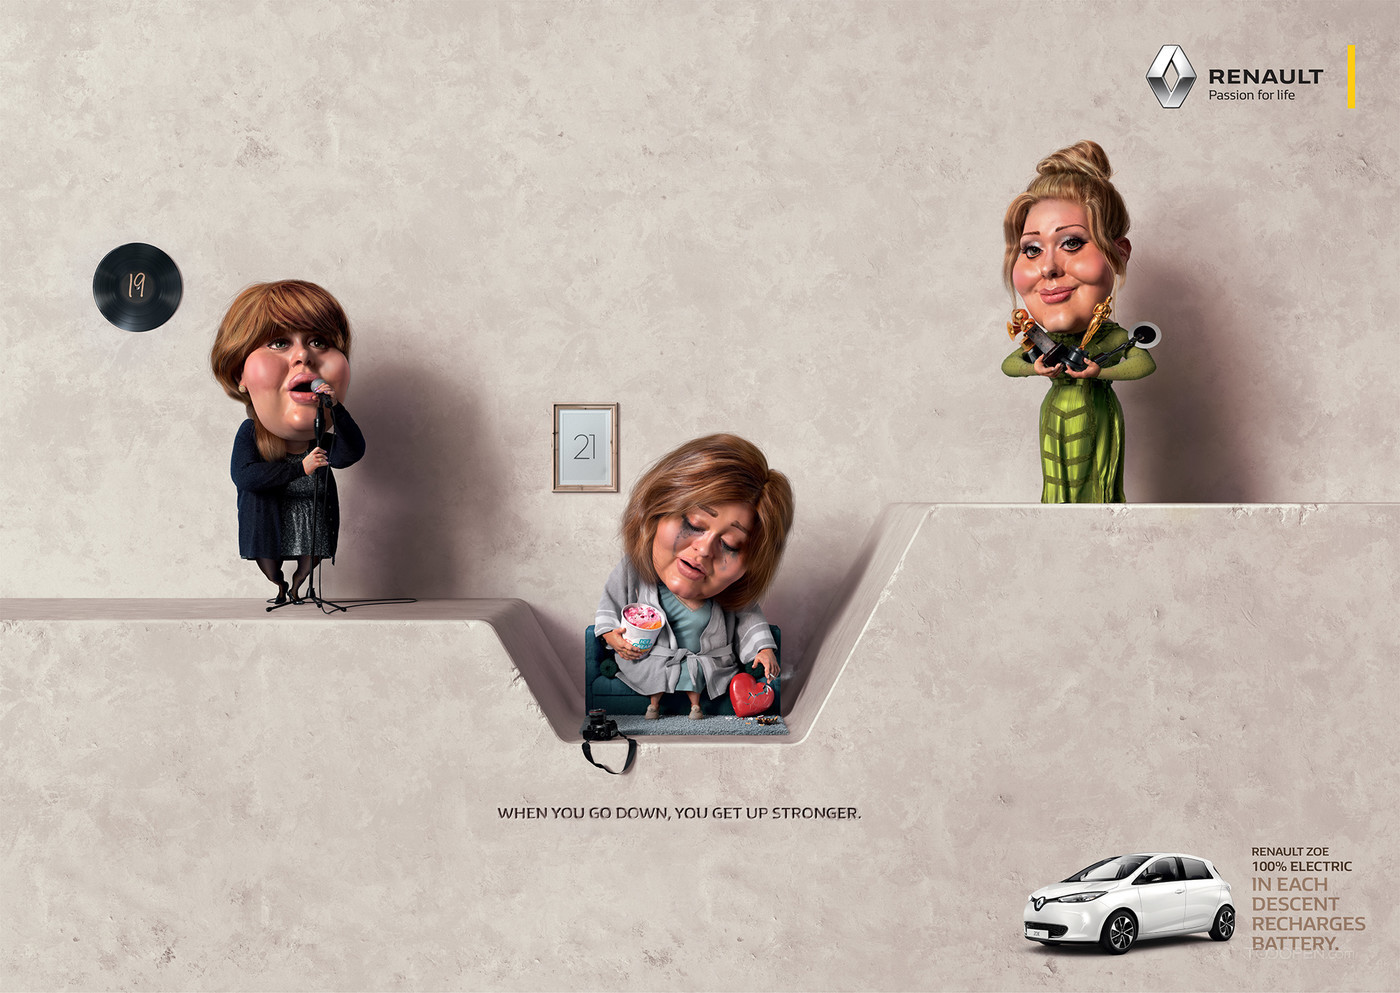 当经过失败你站起来更强大雷诺汽车创意广告海报设计欣赏-03